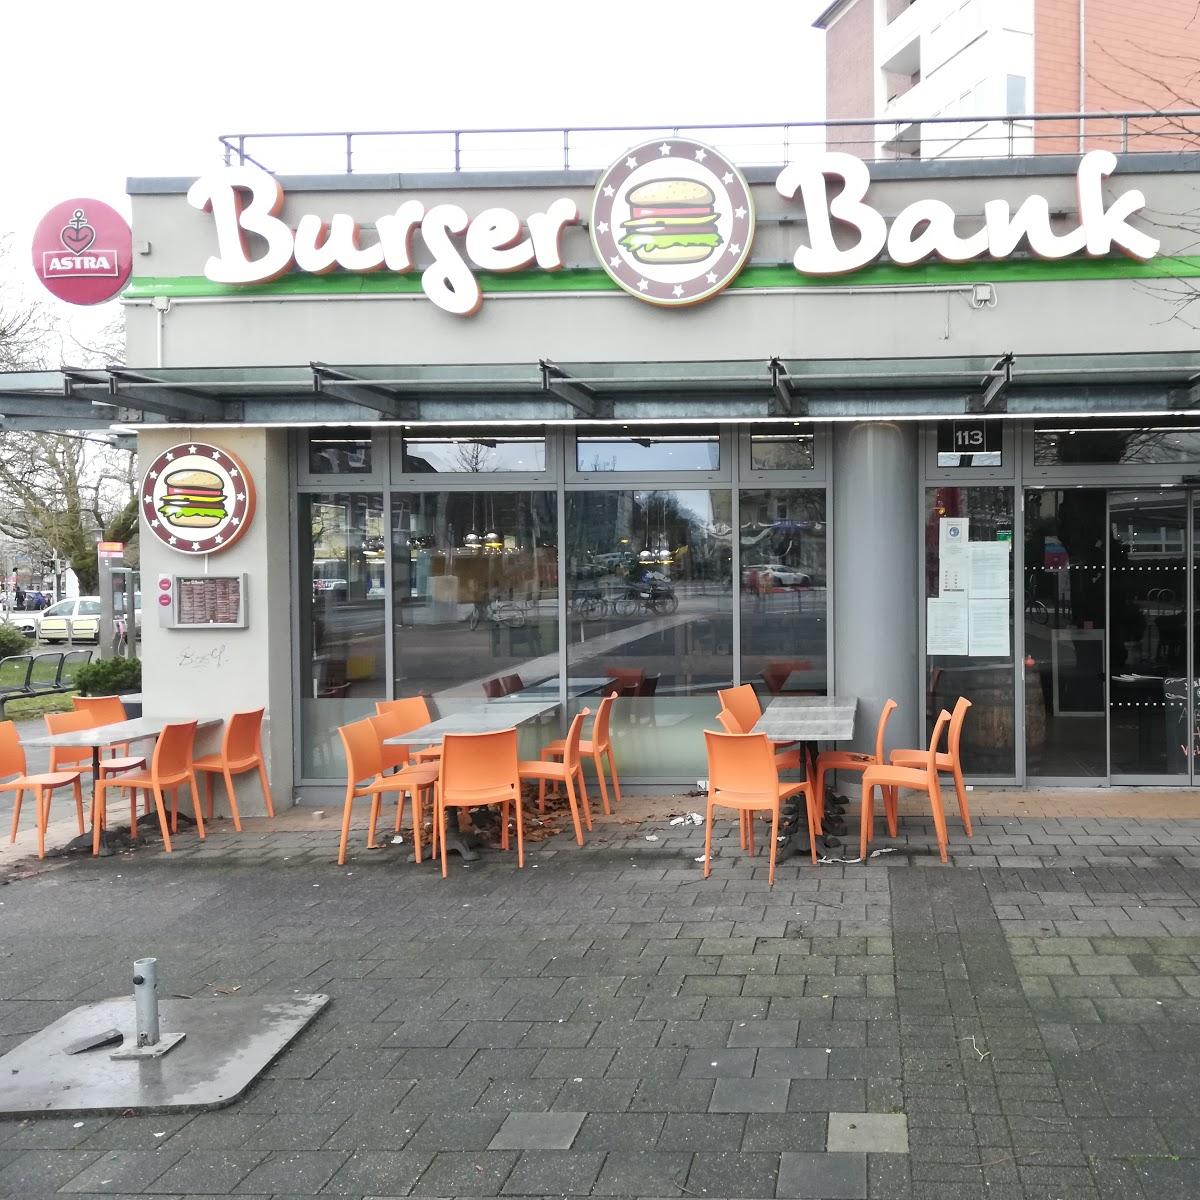 Restaurant "Burger Bank" in Kiel